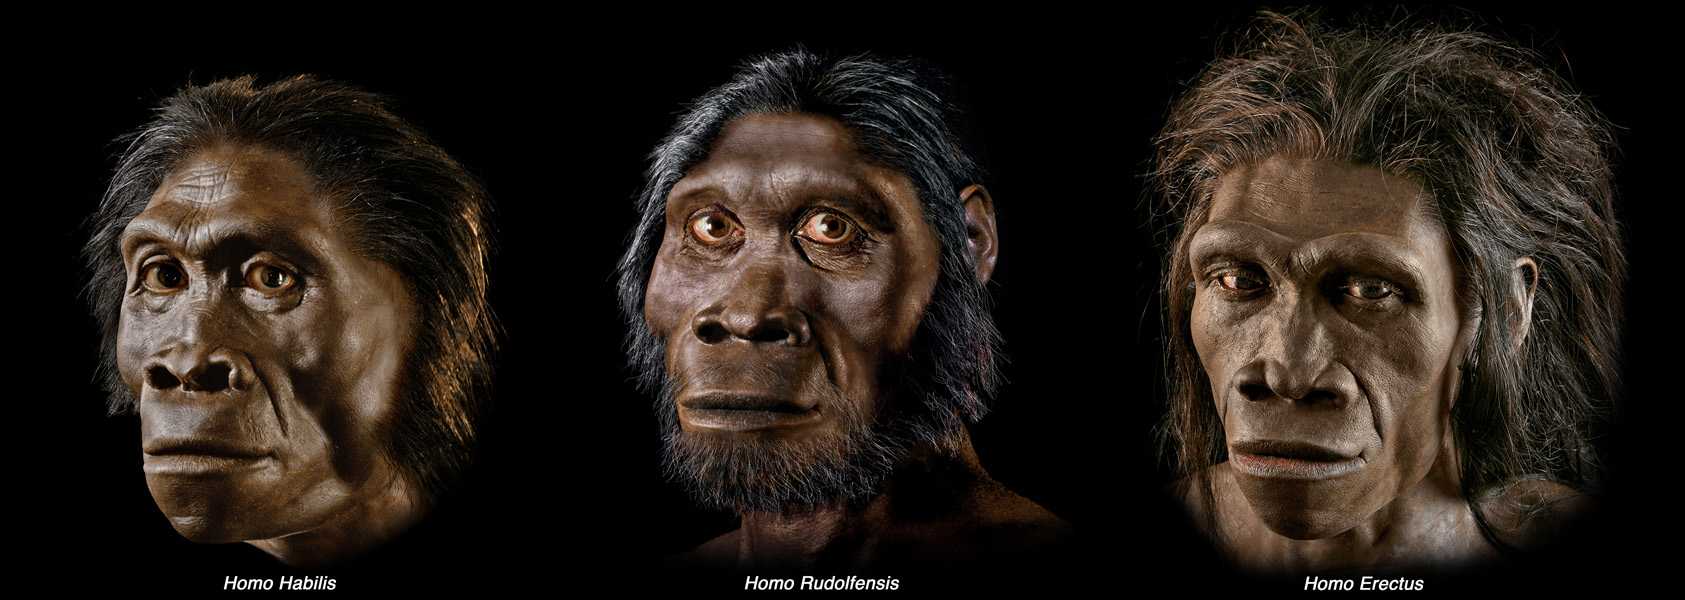 Как выглядели предки человека разумного: кто не смог пройти естественный отбор, а с кем все не так однозначно